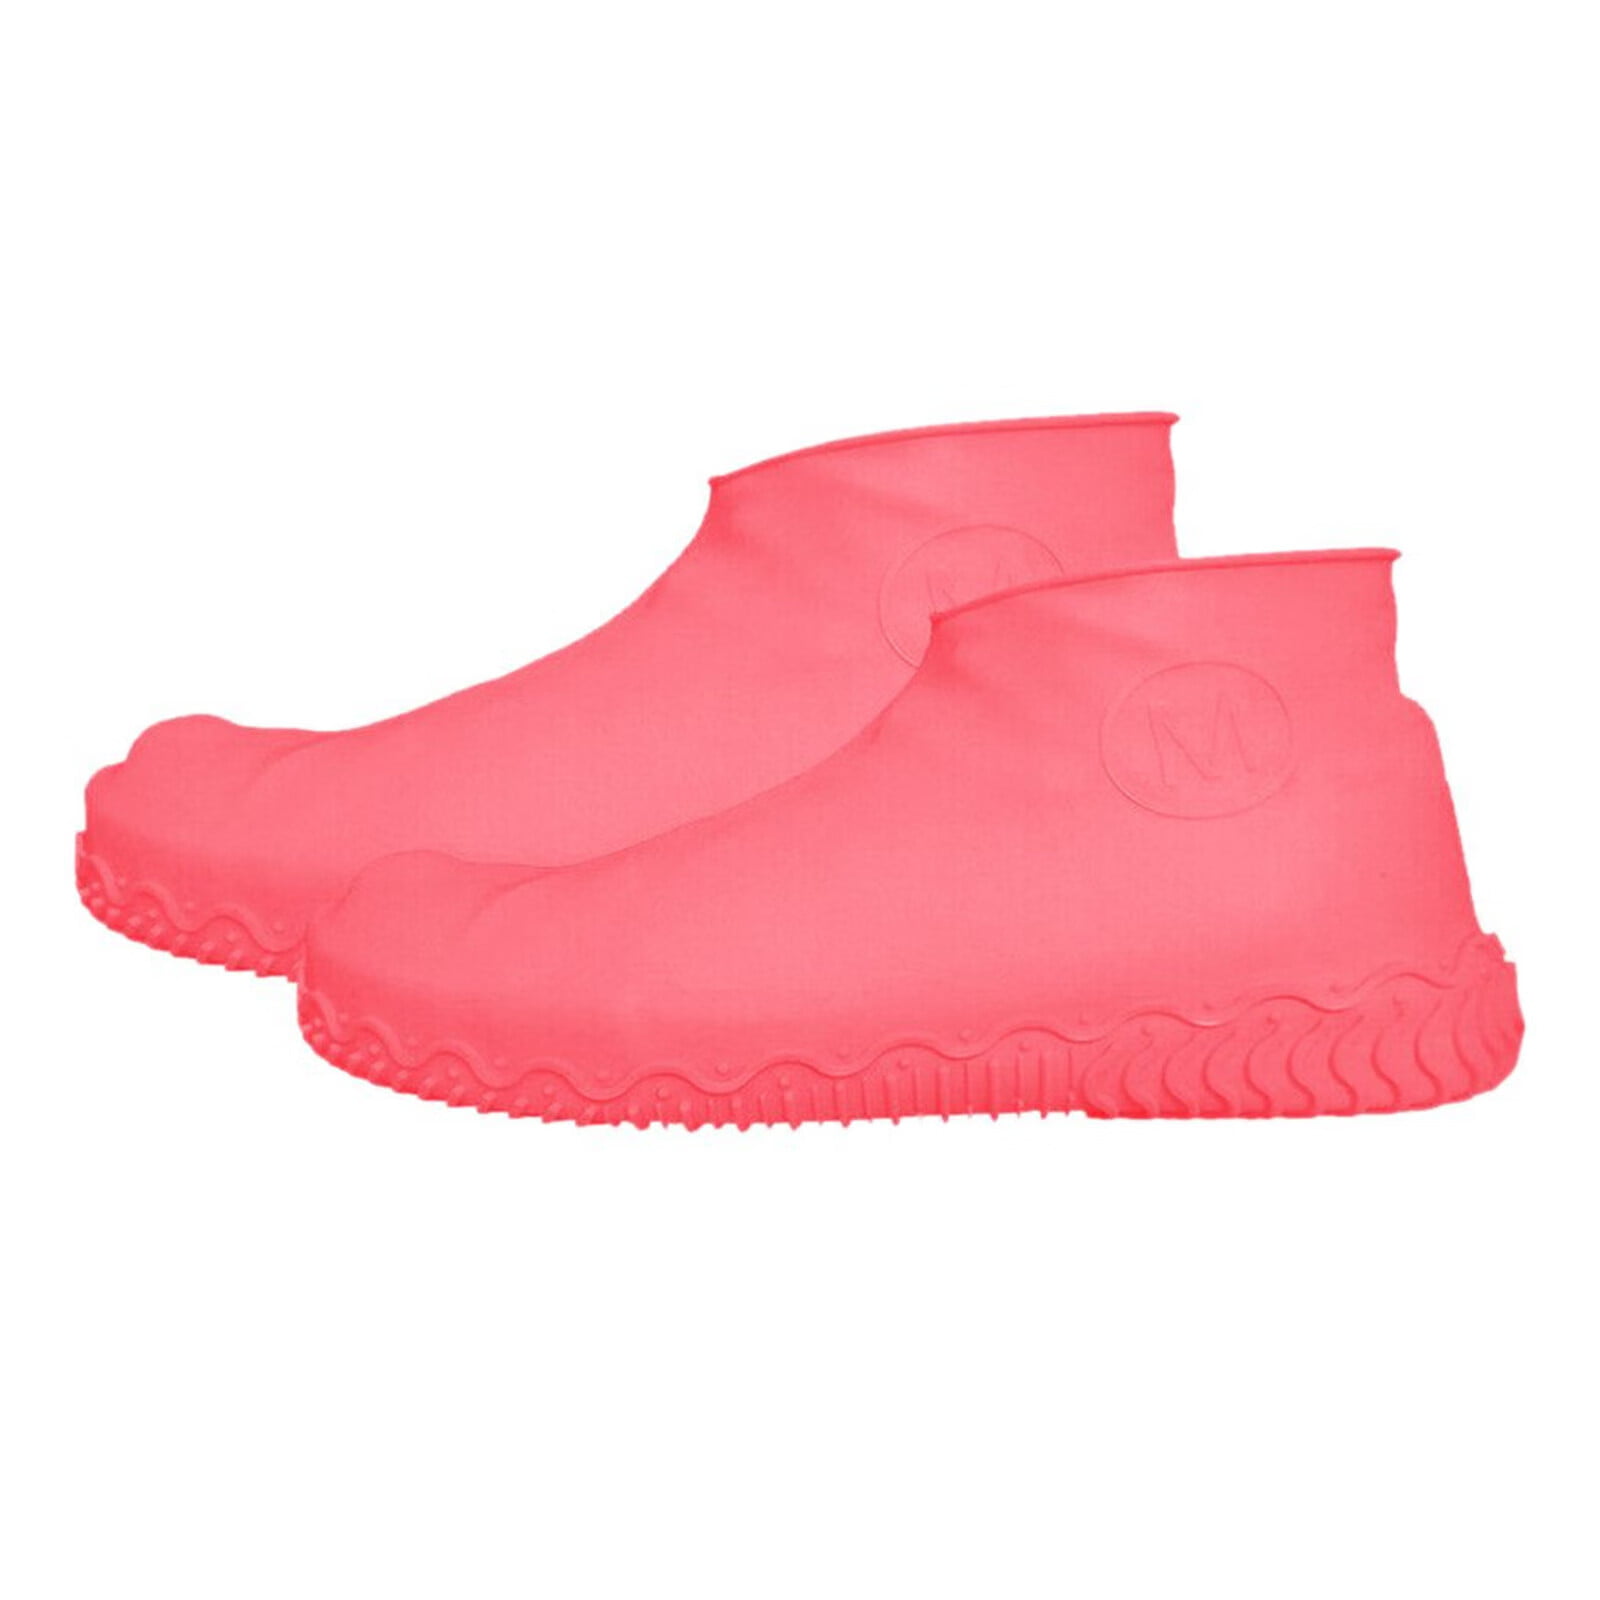 Mortilo rain shoe covers,Shoes Covers Reusable Latex Rain Overshoes ...